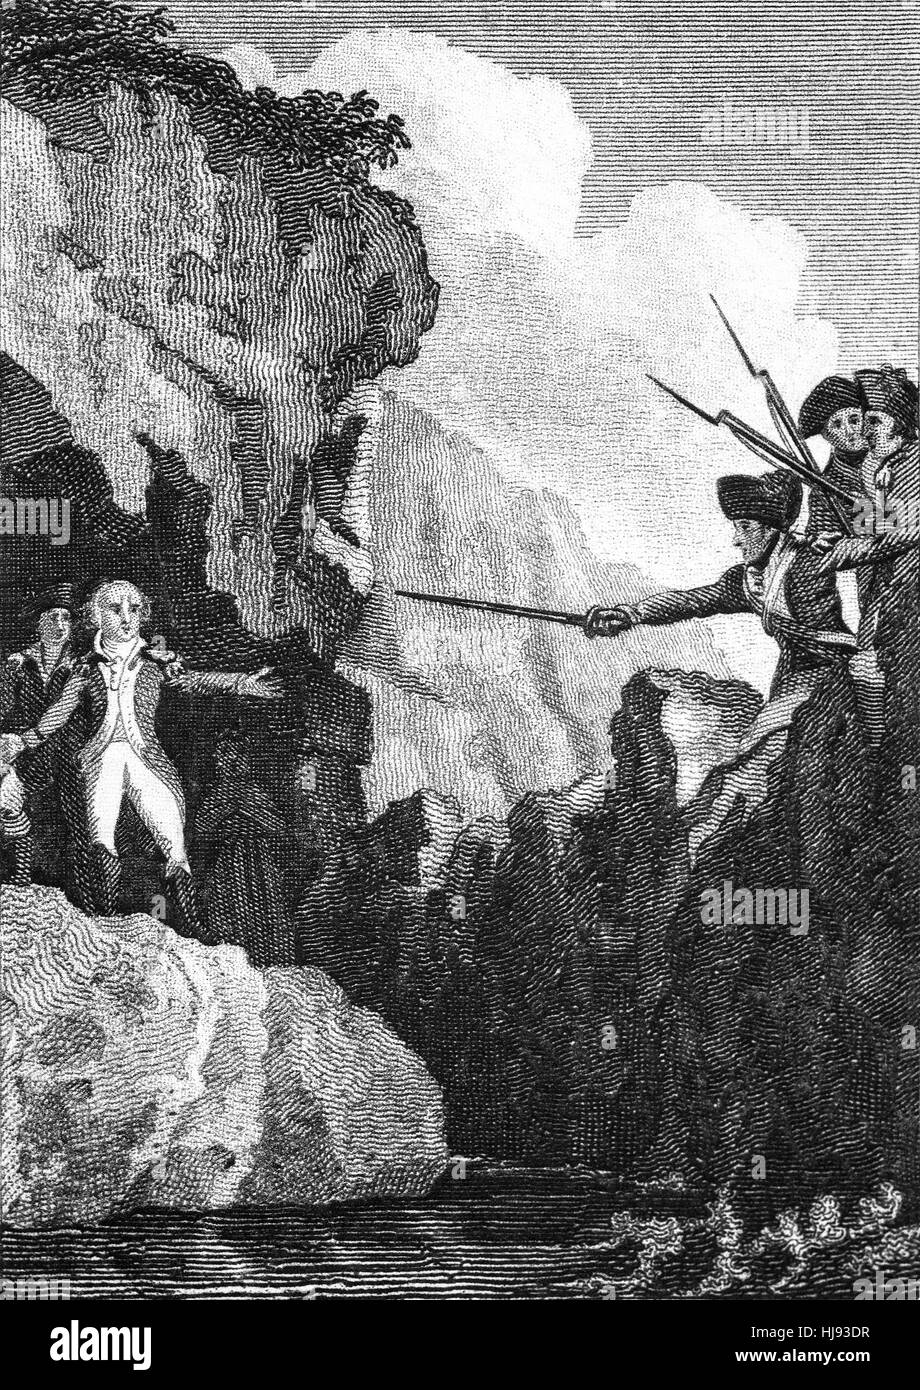 John Henry Colclough und Bagenal Harvey, Führer der irischen Rebellion von 1798, nahm Zuflucht in einer Höhle auf den Saltee Inseln von woher sie nach republikanischen Frankreich entkommen wollte. Sie wurden verraten, verhaftet und nach Wexford Town gebracht. Dort wurden sie auf der Brücke am 28. Juni 1798 gehängt. Stockfoto